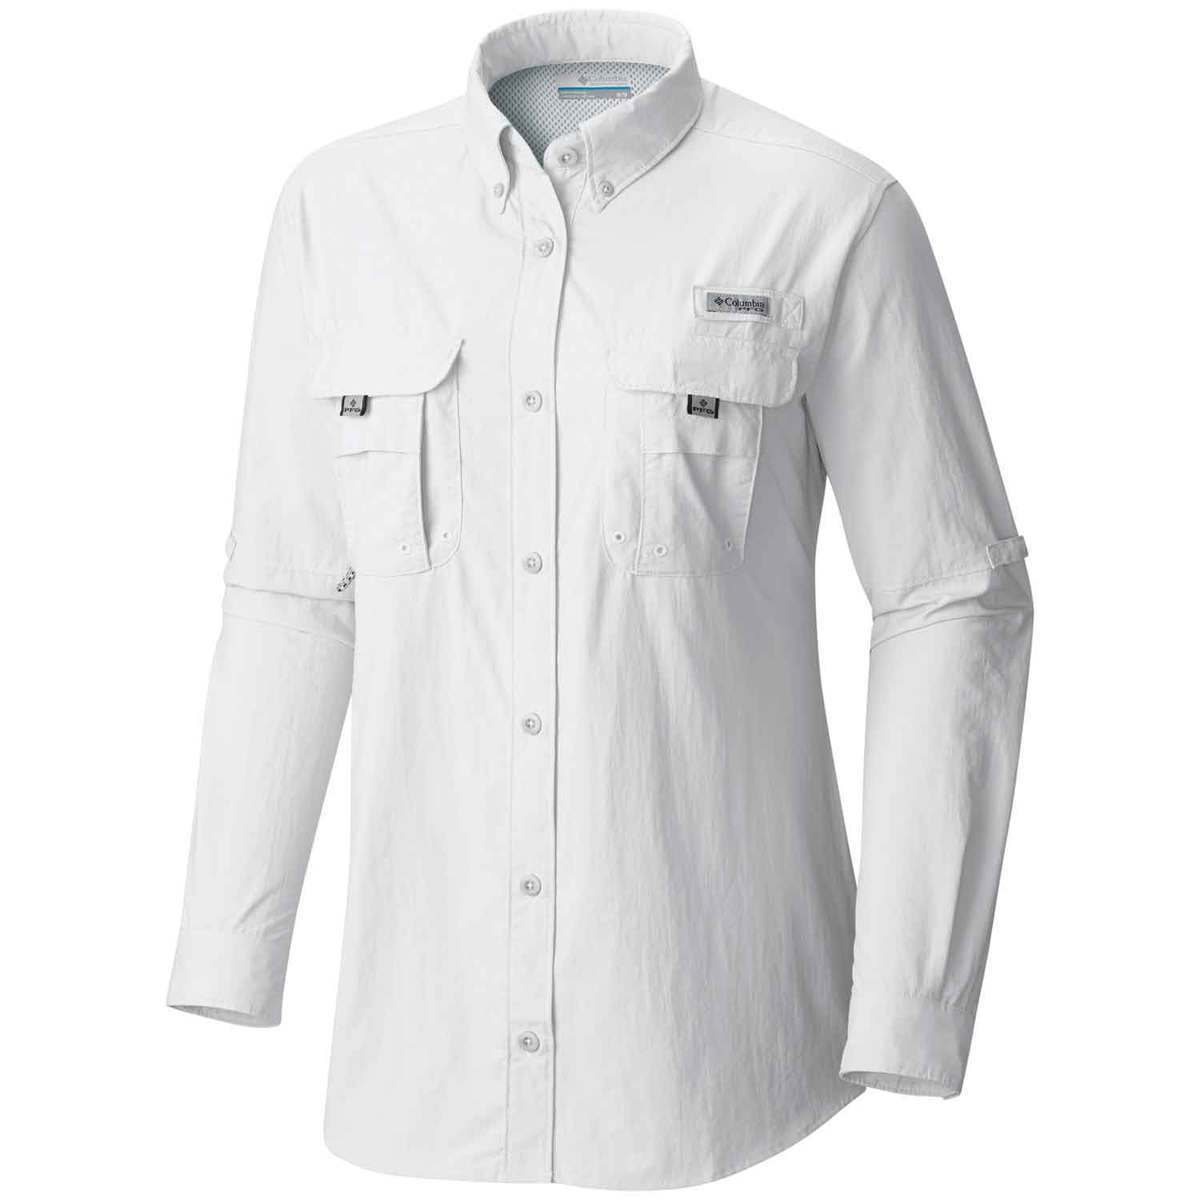 Columbia Women's PFG Bahama Long Sleeve Shirt - White - XS - White XS ...